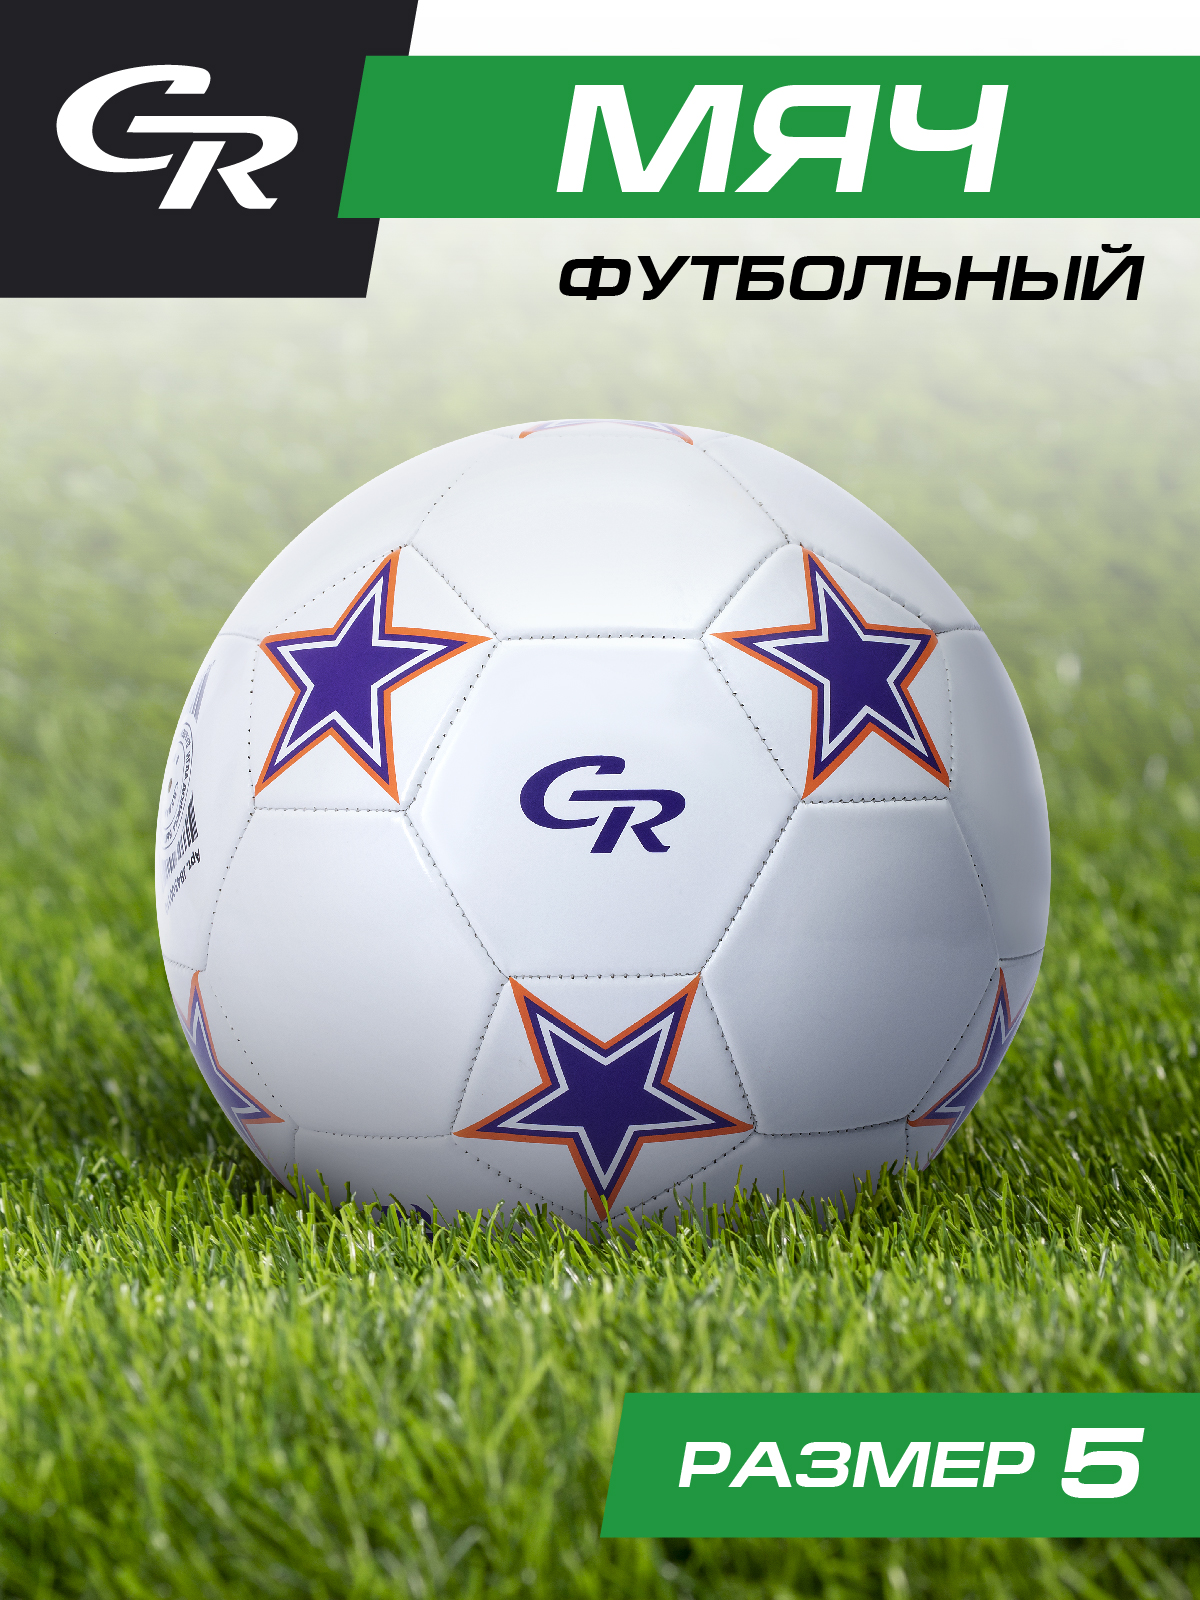 Мяч футбольный ТМ City Ride, 3-слойный, сшитые панели, ПВХ, размер 5, диаметр 22,JB4300110